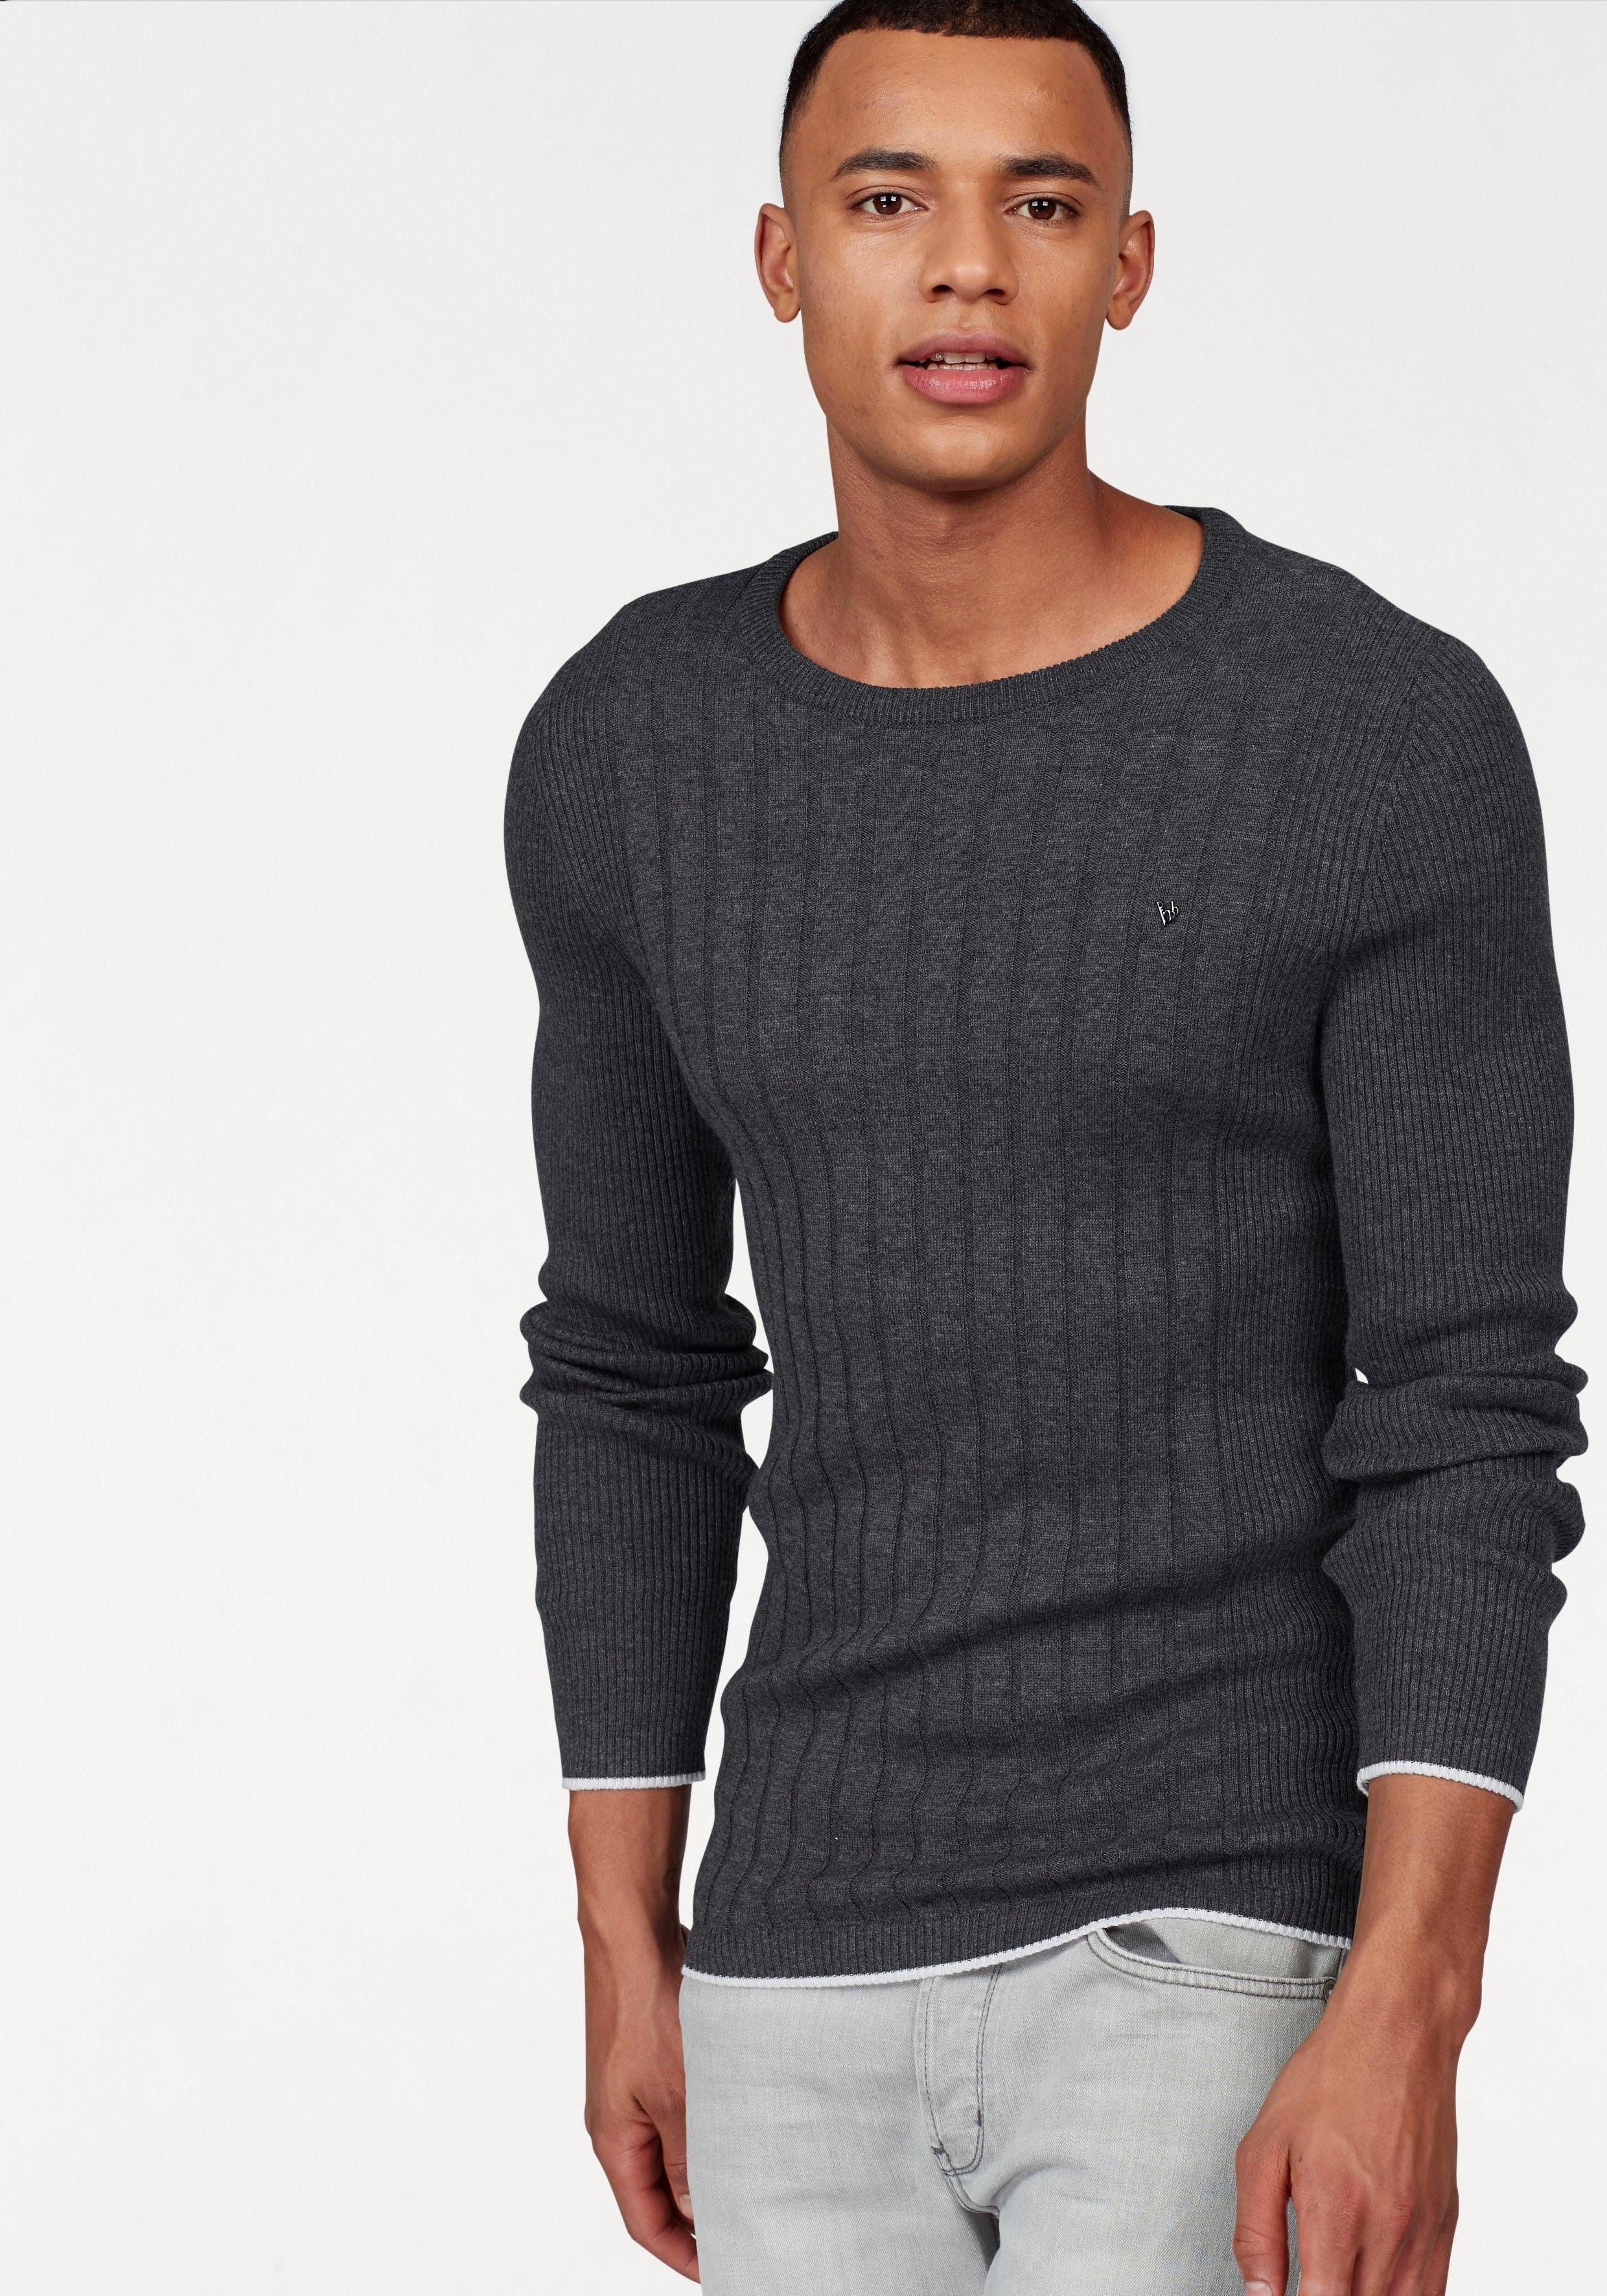 Moderner Herren Pullover online kaufen | OTTO